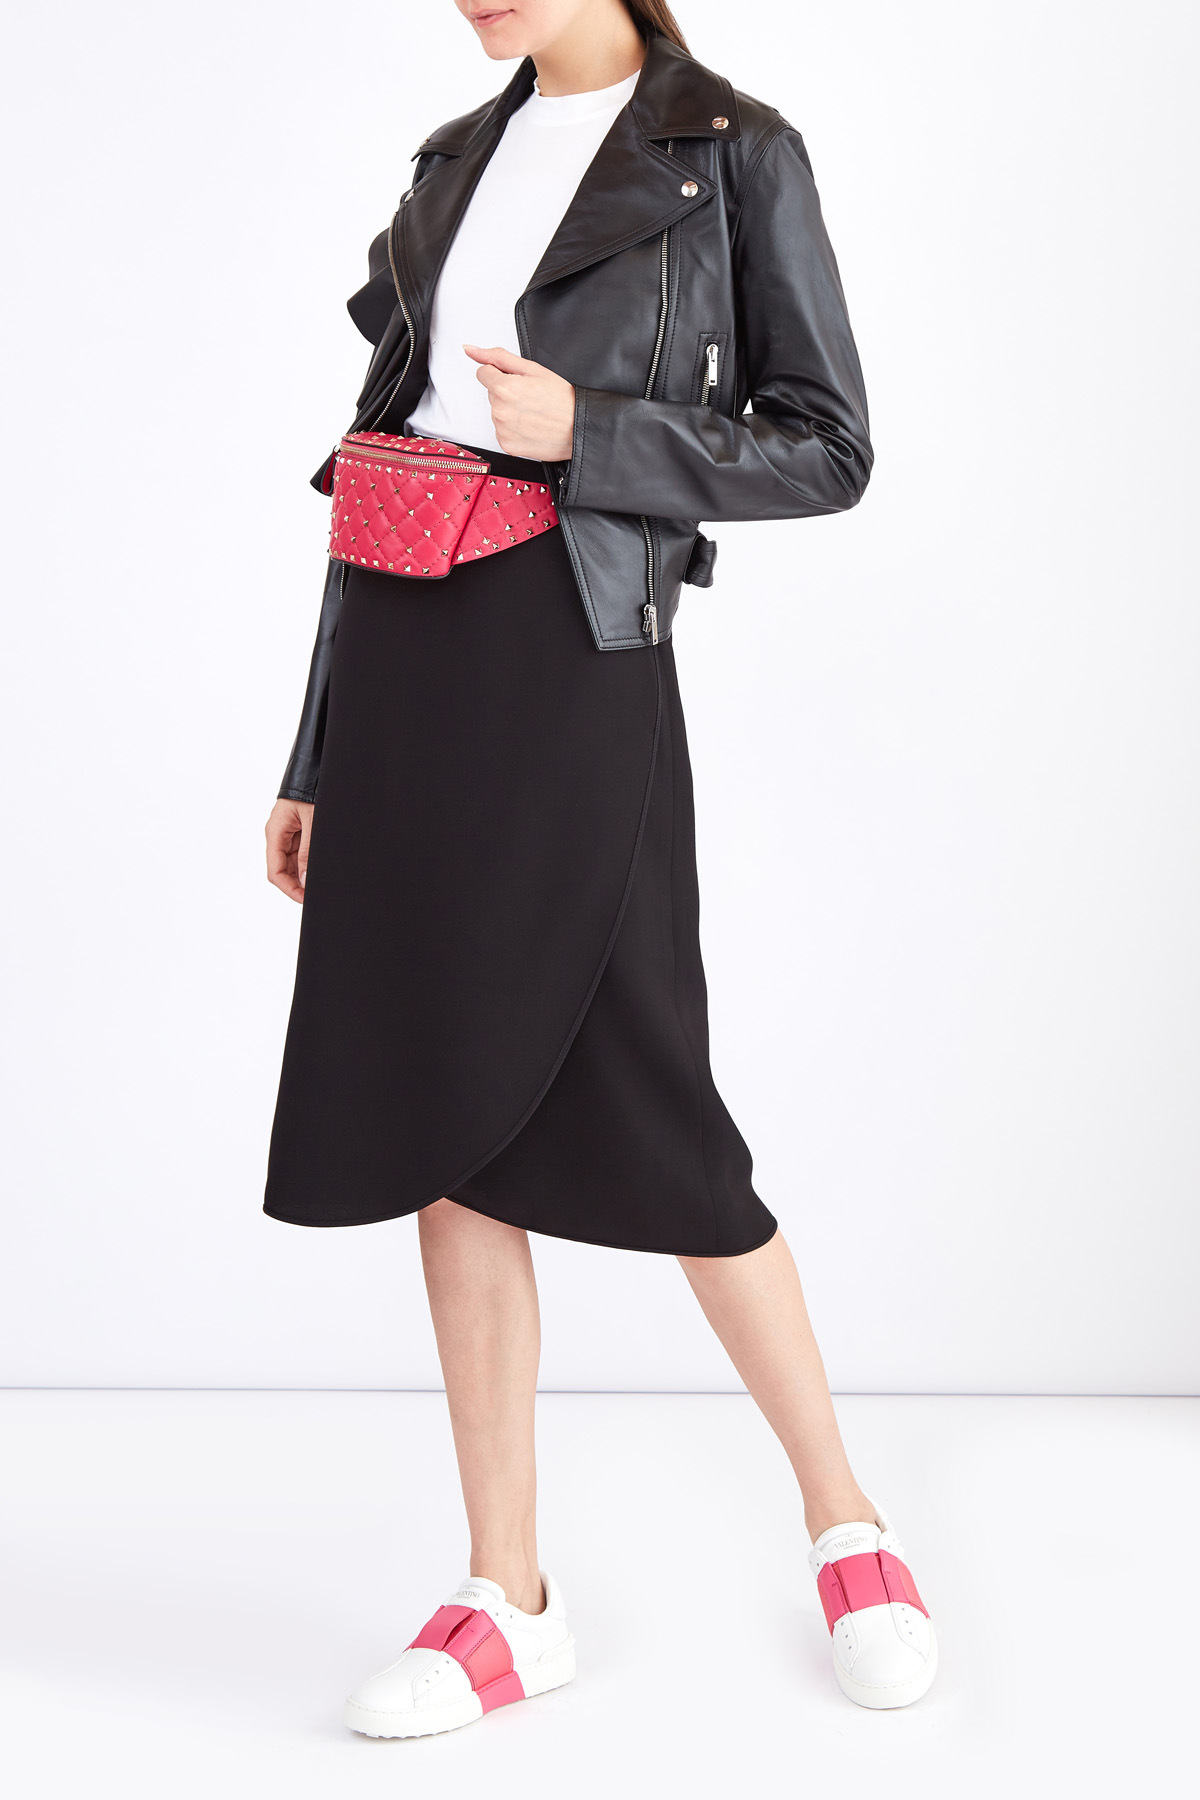 Минималистичная юбка на запах из черного шелка VALENTINO, цвет черный, размер 40 - фото 2